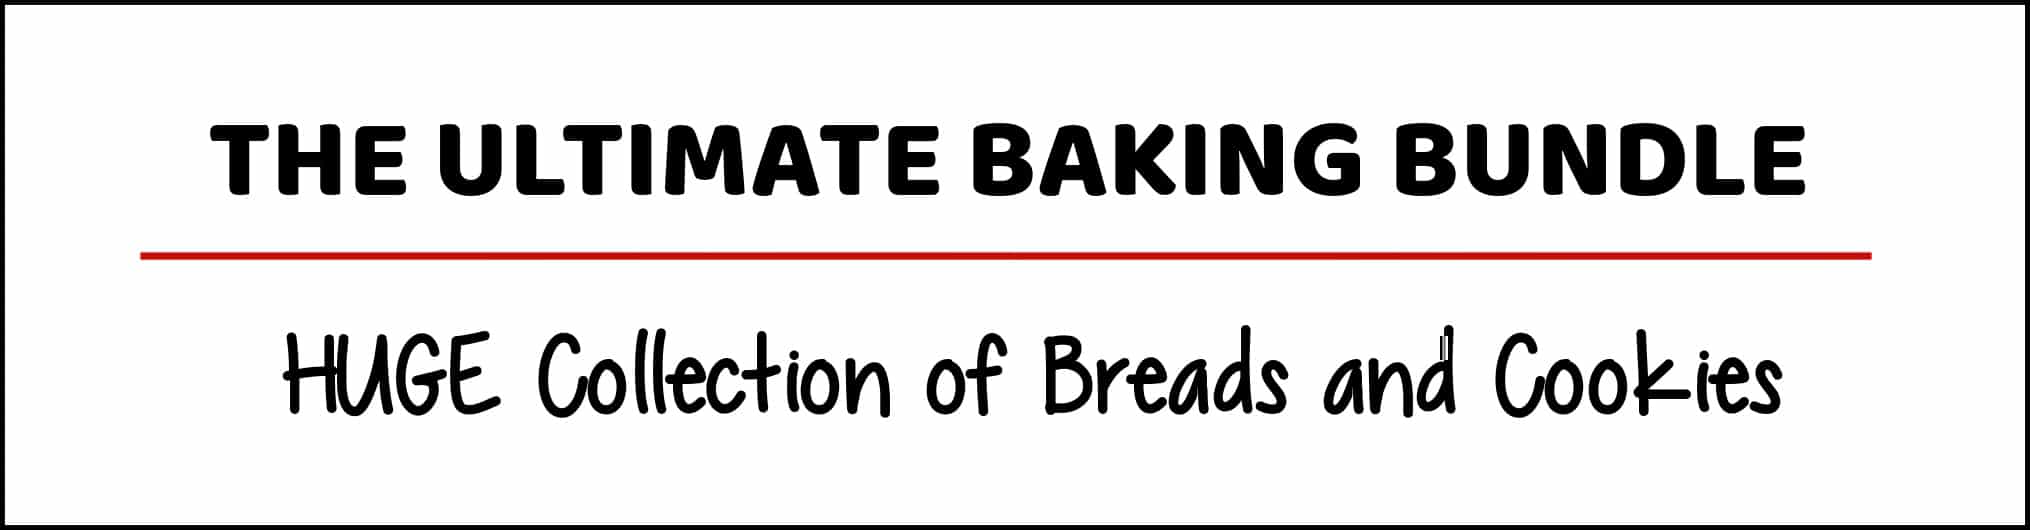 Winter baking bundle 14